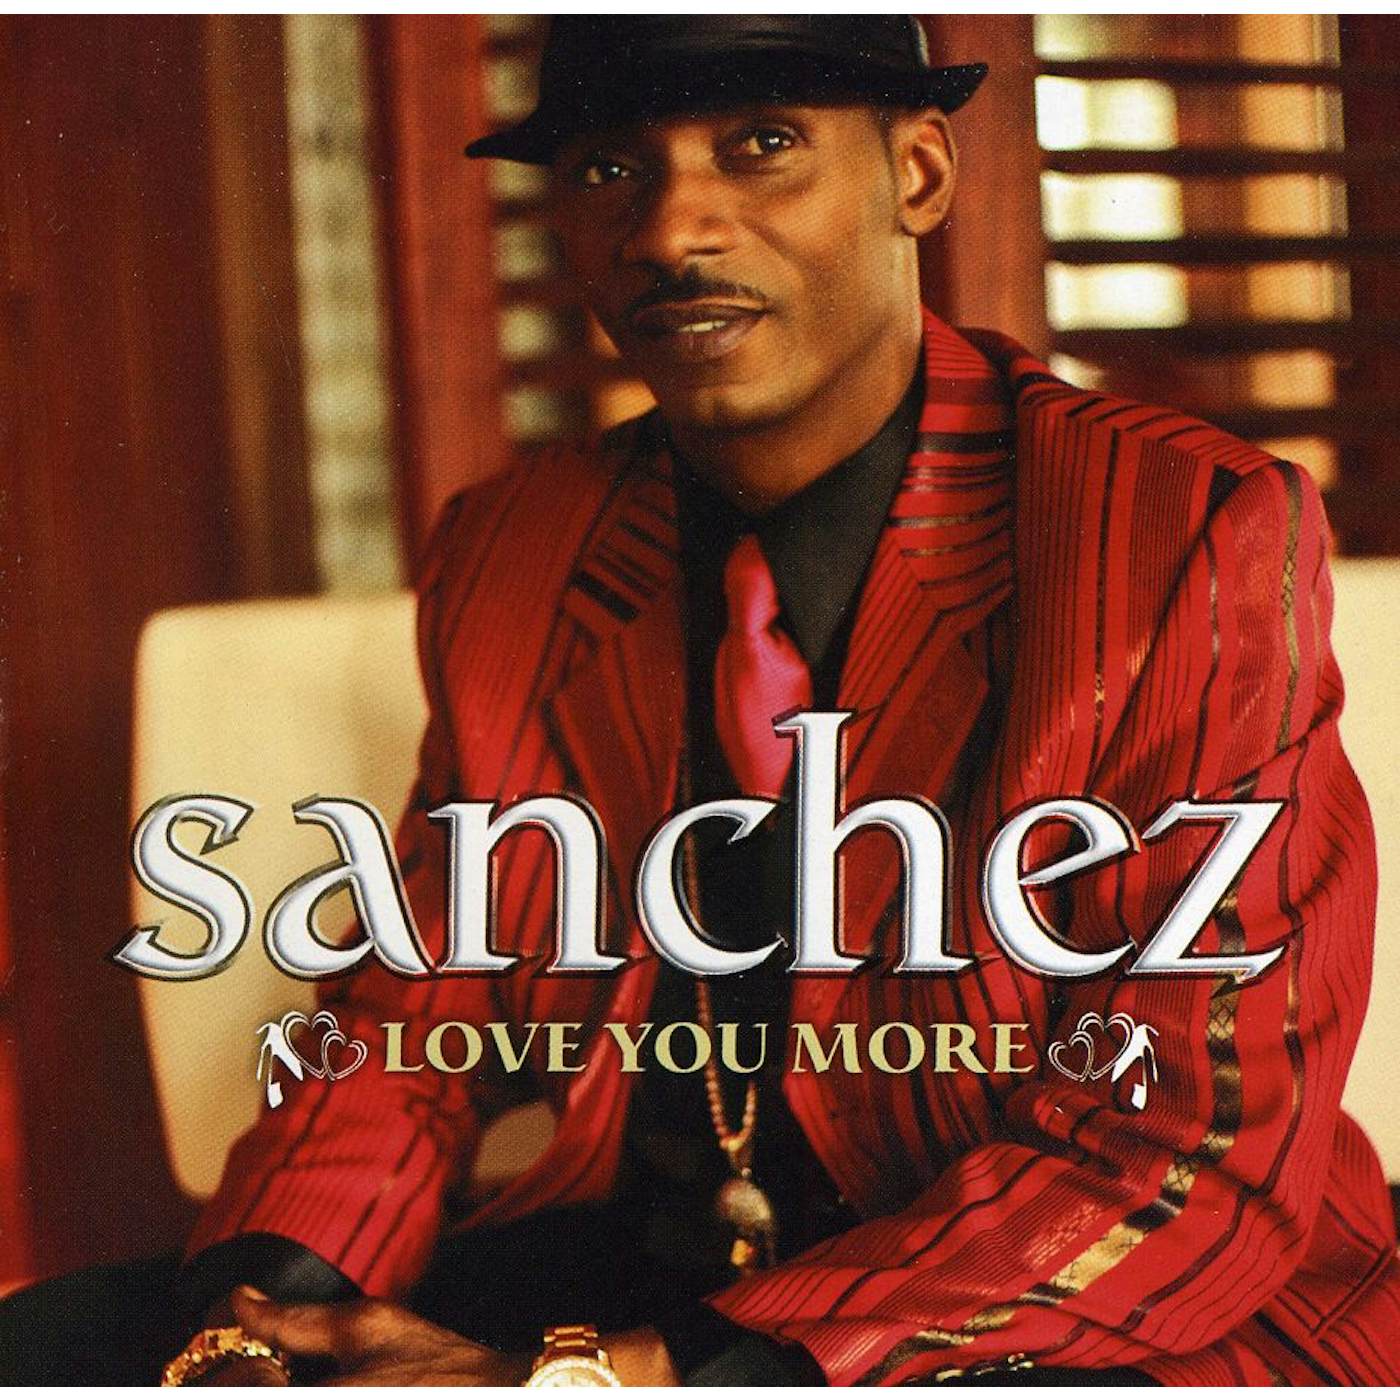 Sanchez LOVE YOU MORE CD